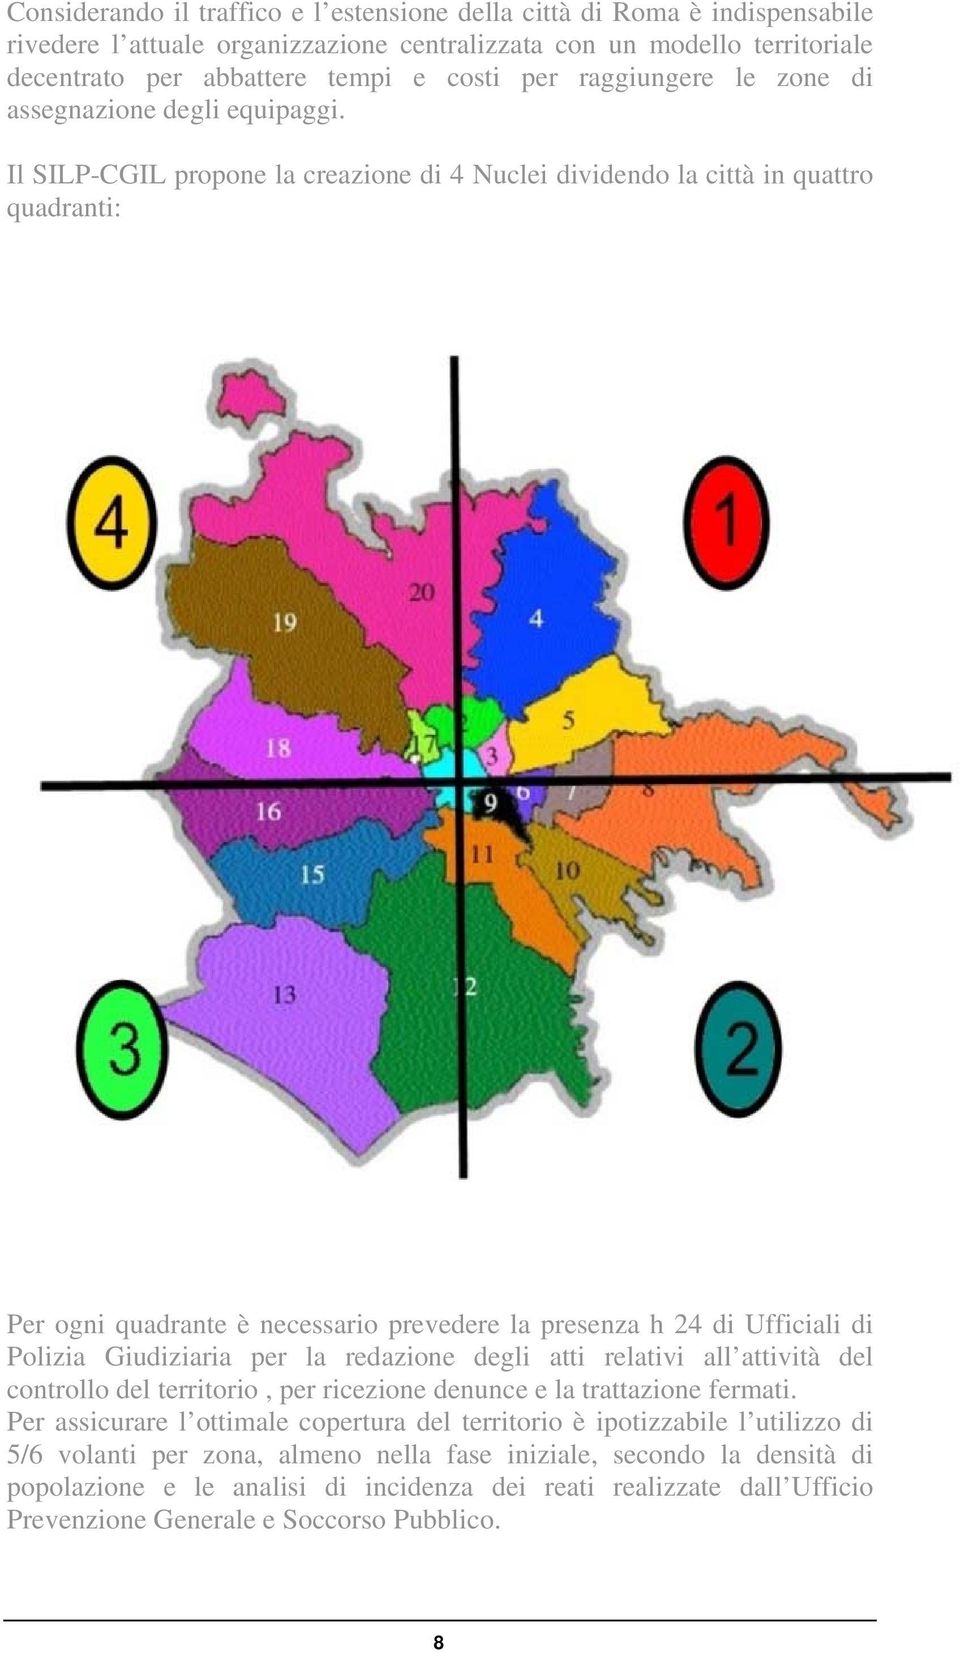 Il SILP-CGIL propone la creazione di 4 Nuclei dividendo la città in quattro quadranti: Per ogni quadrante è necessario prevedere la presenza h 24 di Ufficiali di Polizia Giudiziaria per la redazione